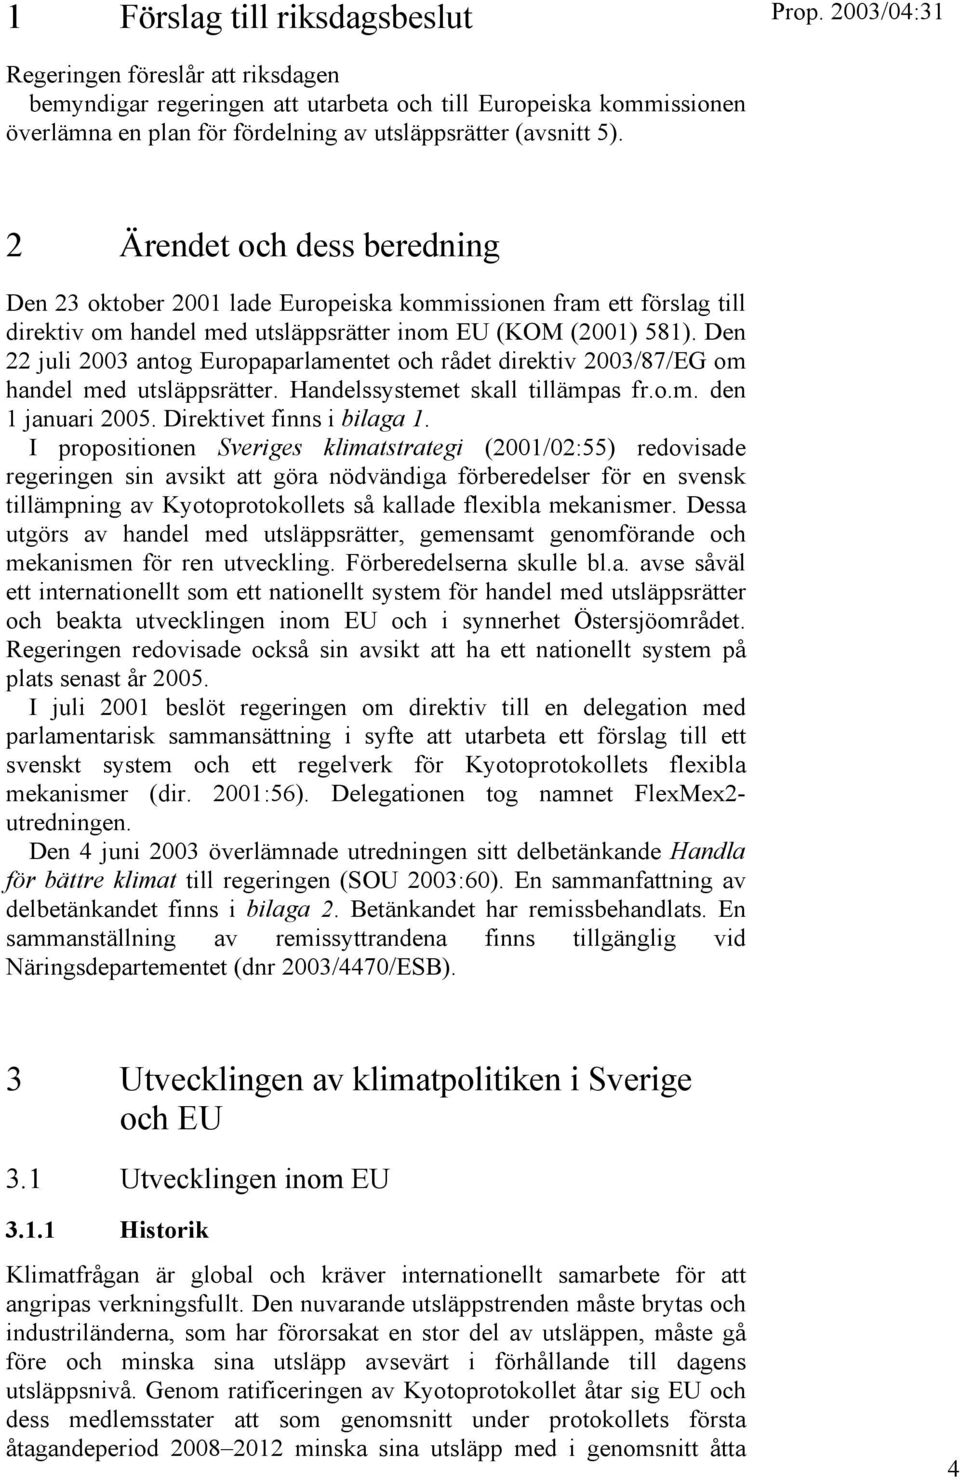 Den 22 juli 2003 antog Europaparlamentet och rådet direktiv 2003/87/EG om handel med utsläppsrätter. Handelssystemet skall tillämpas fr.o.m. den 1 januari 2005. Direktivet finns i bilaga 1.